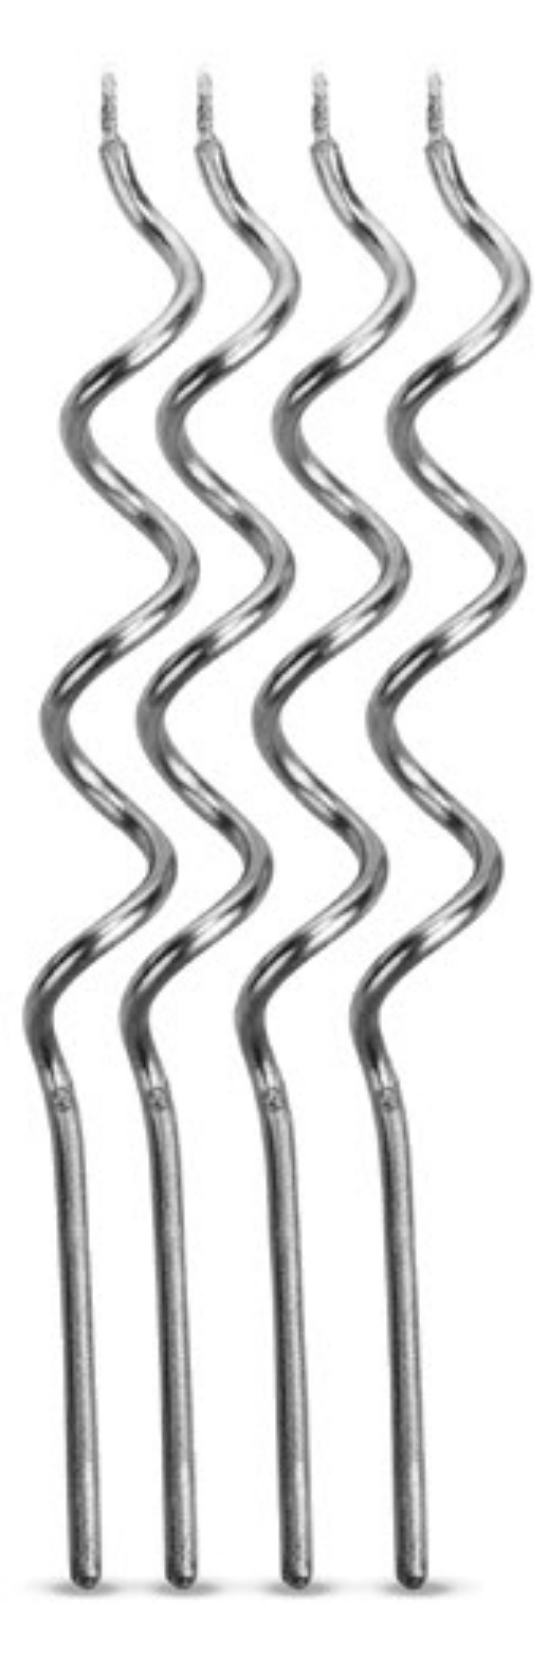 Vela Aniversário Metalizada Espiral Prata 13cm - 04 unid